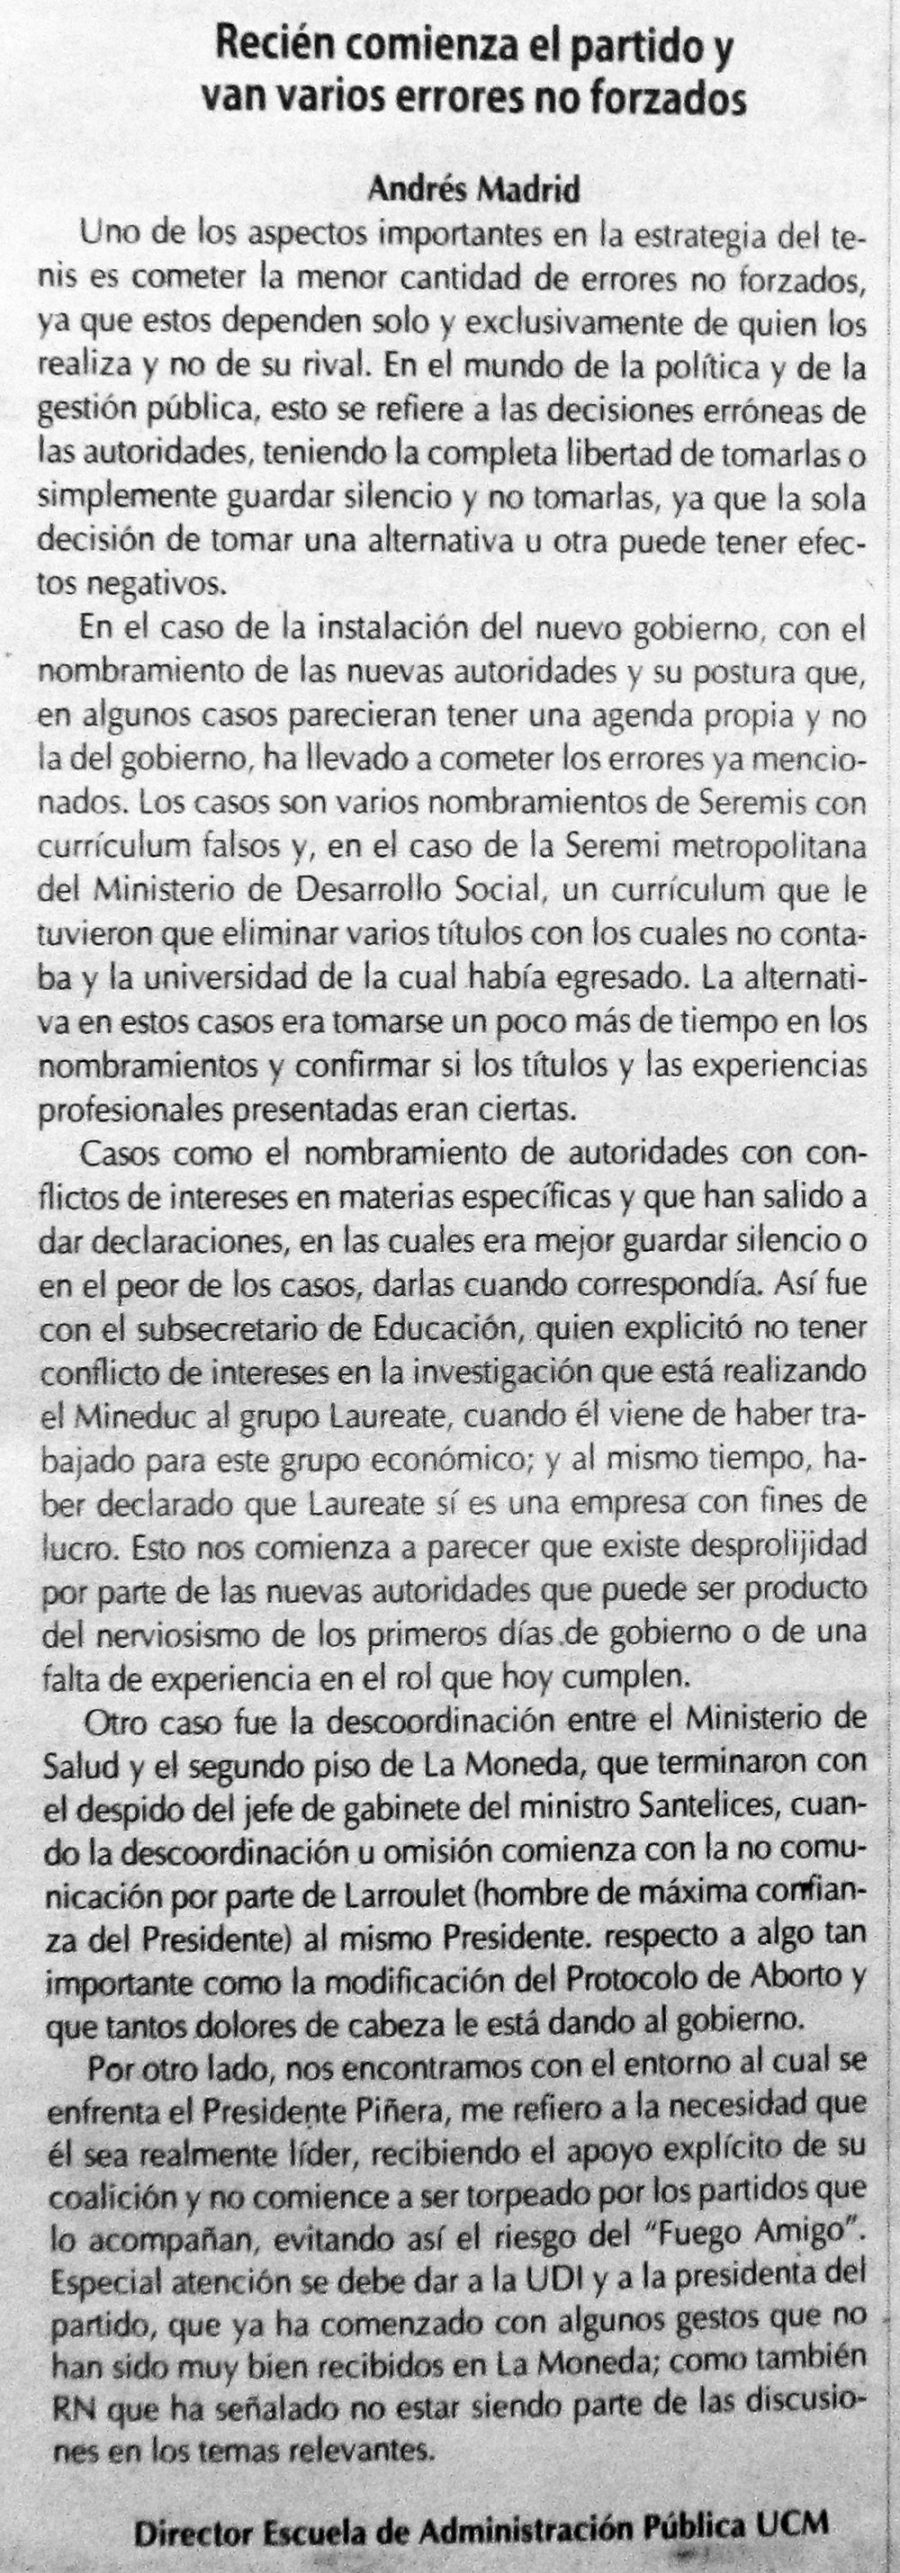 23 de abril en Diario El Centro: “Recién comienza el partido y van varios errores no forzados”